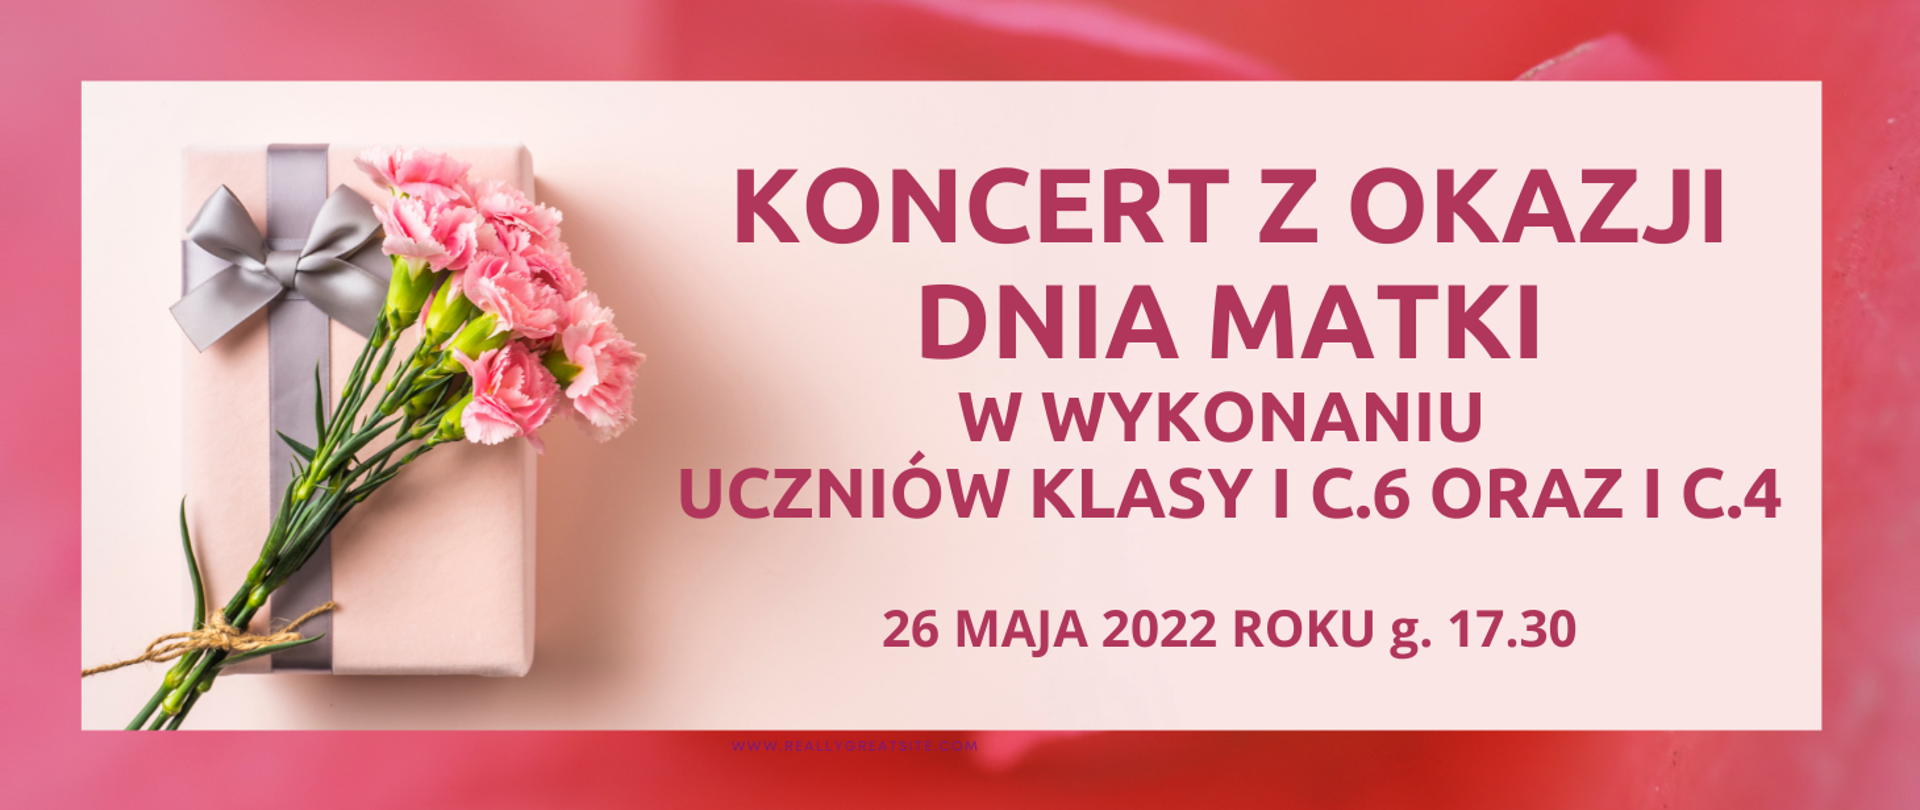 Koncert z okazji Dnia Matki w wykonaniu uczniów klasy I cyklu sześcioletniego oraz pierwszej cyklu czteroletniego. Po lewej stronie bukiet kwiatów, a w prawym dolnym rogu data 26 maja 2022 roku.